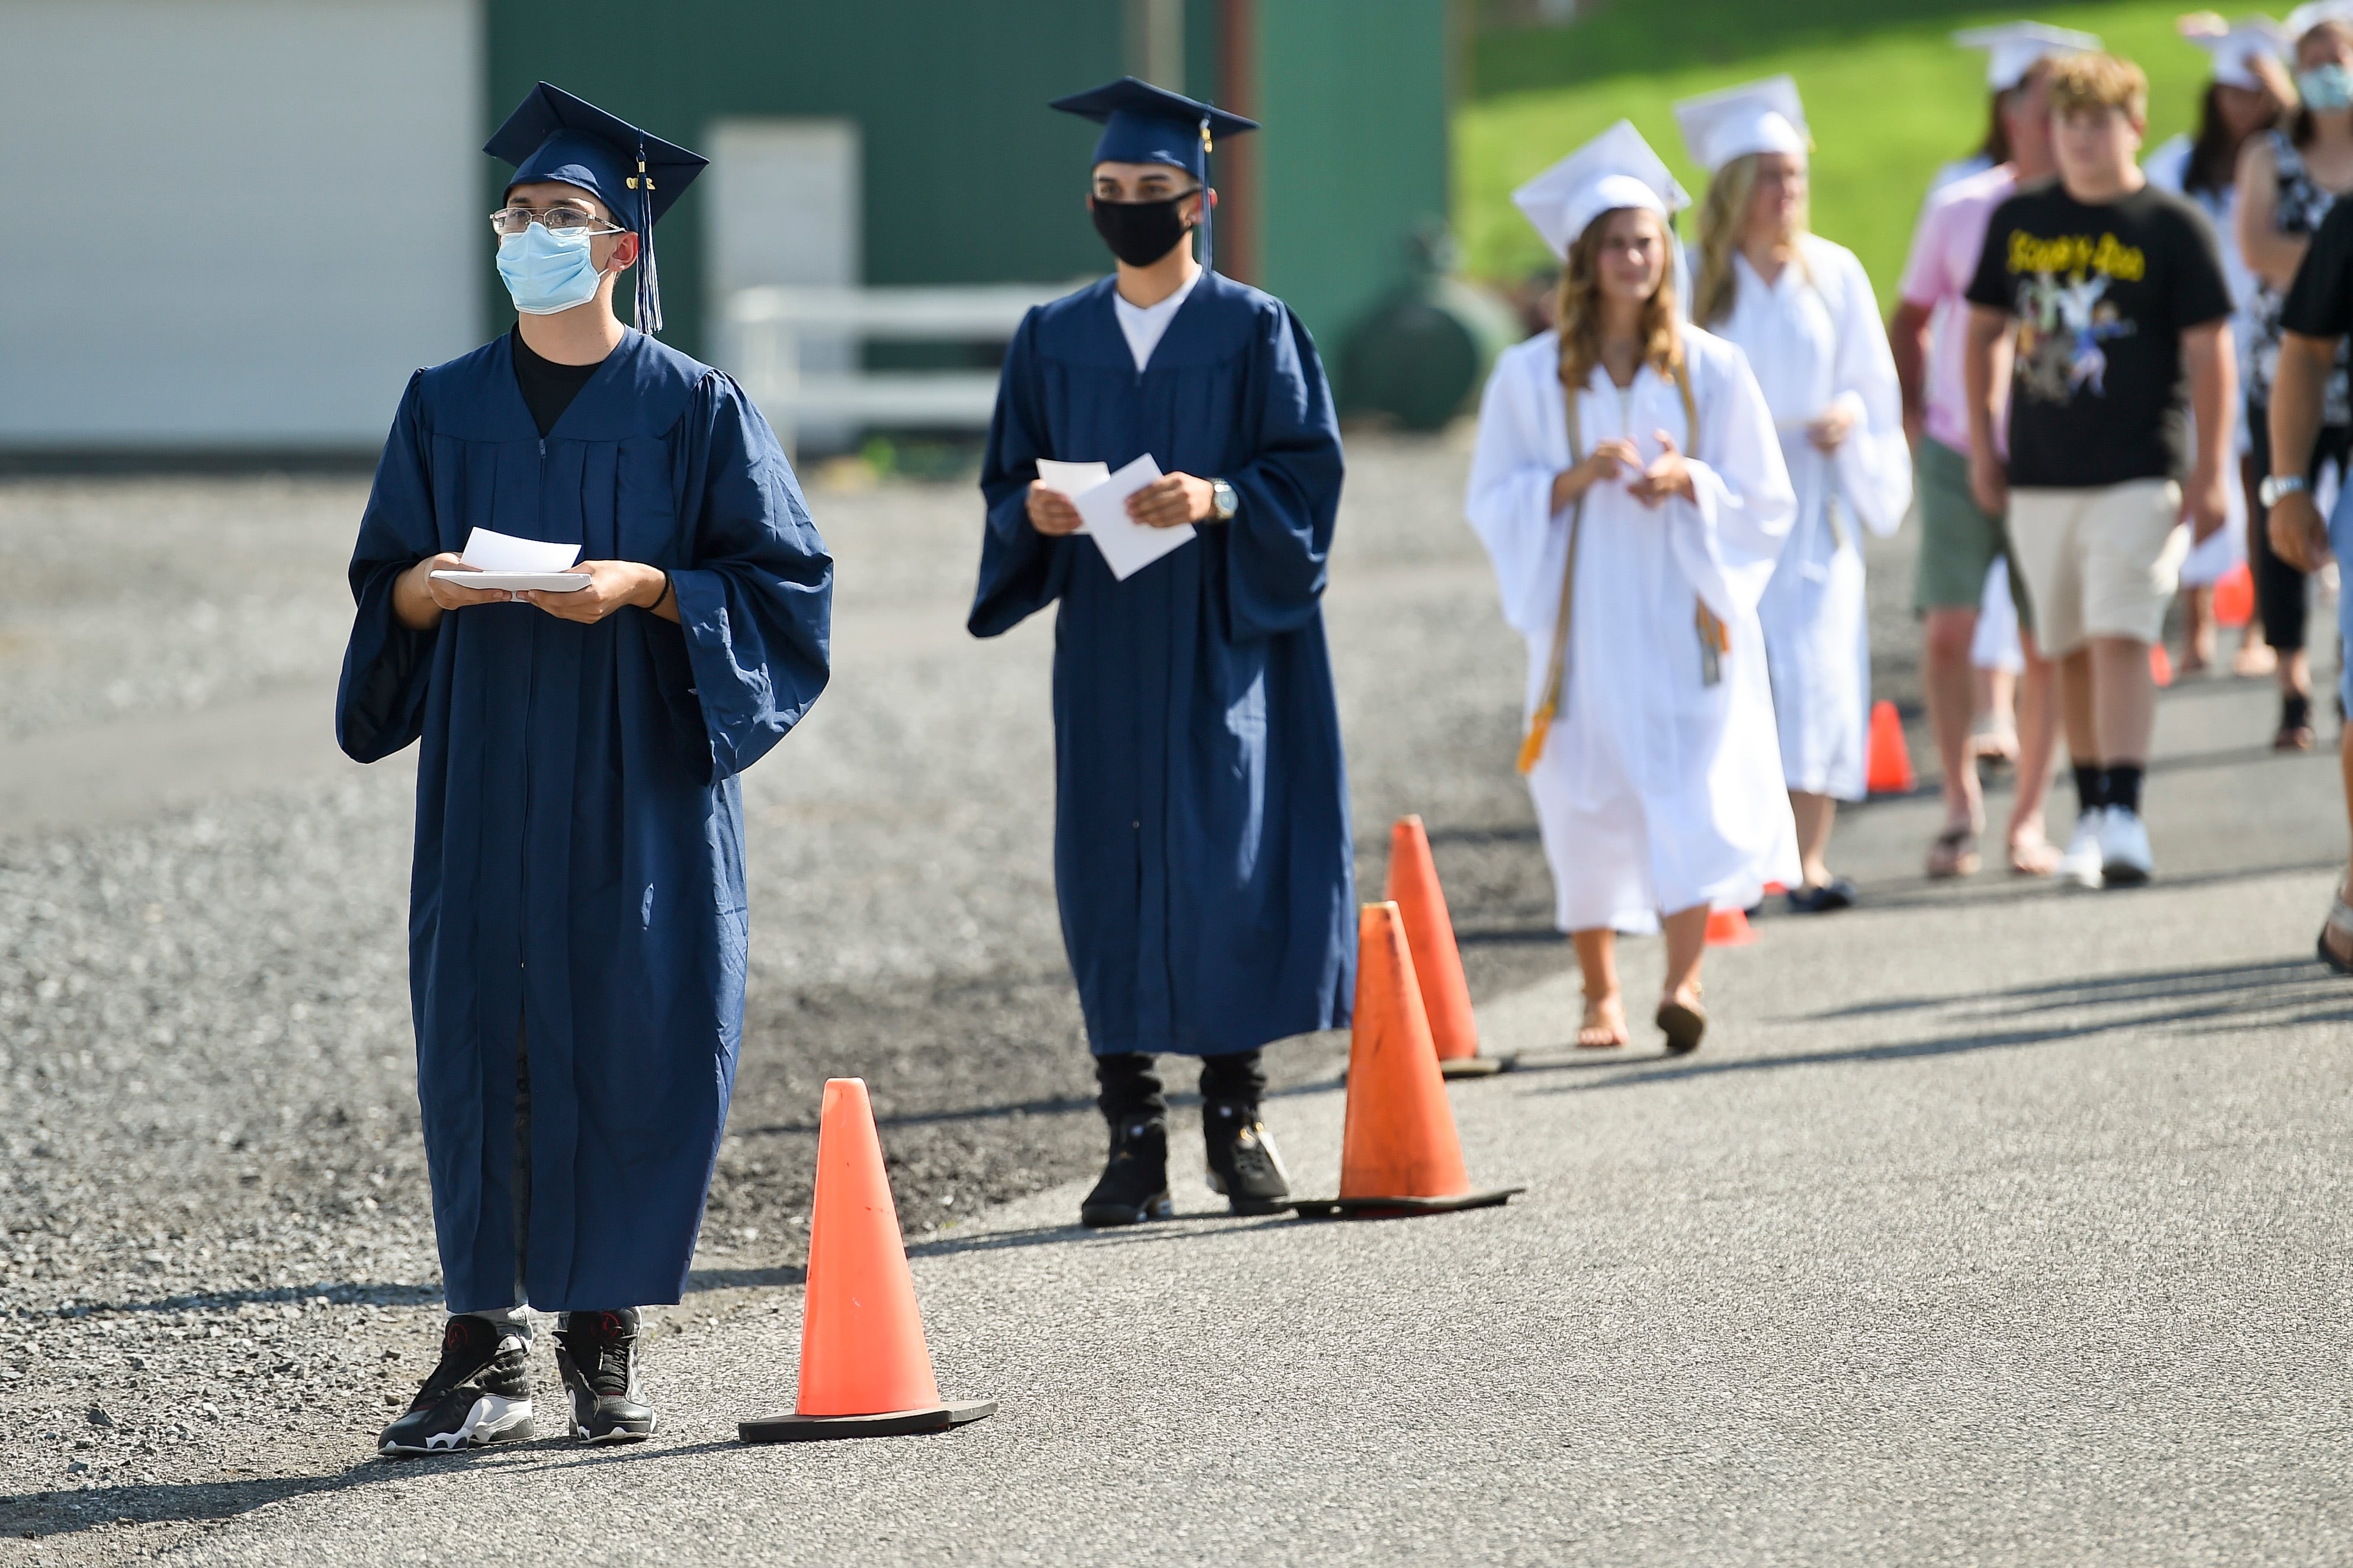 High School Graduation Modified To Prevent The Spread Of Coronavirus COVID-19